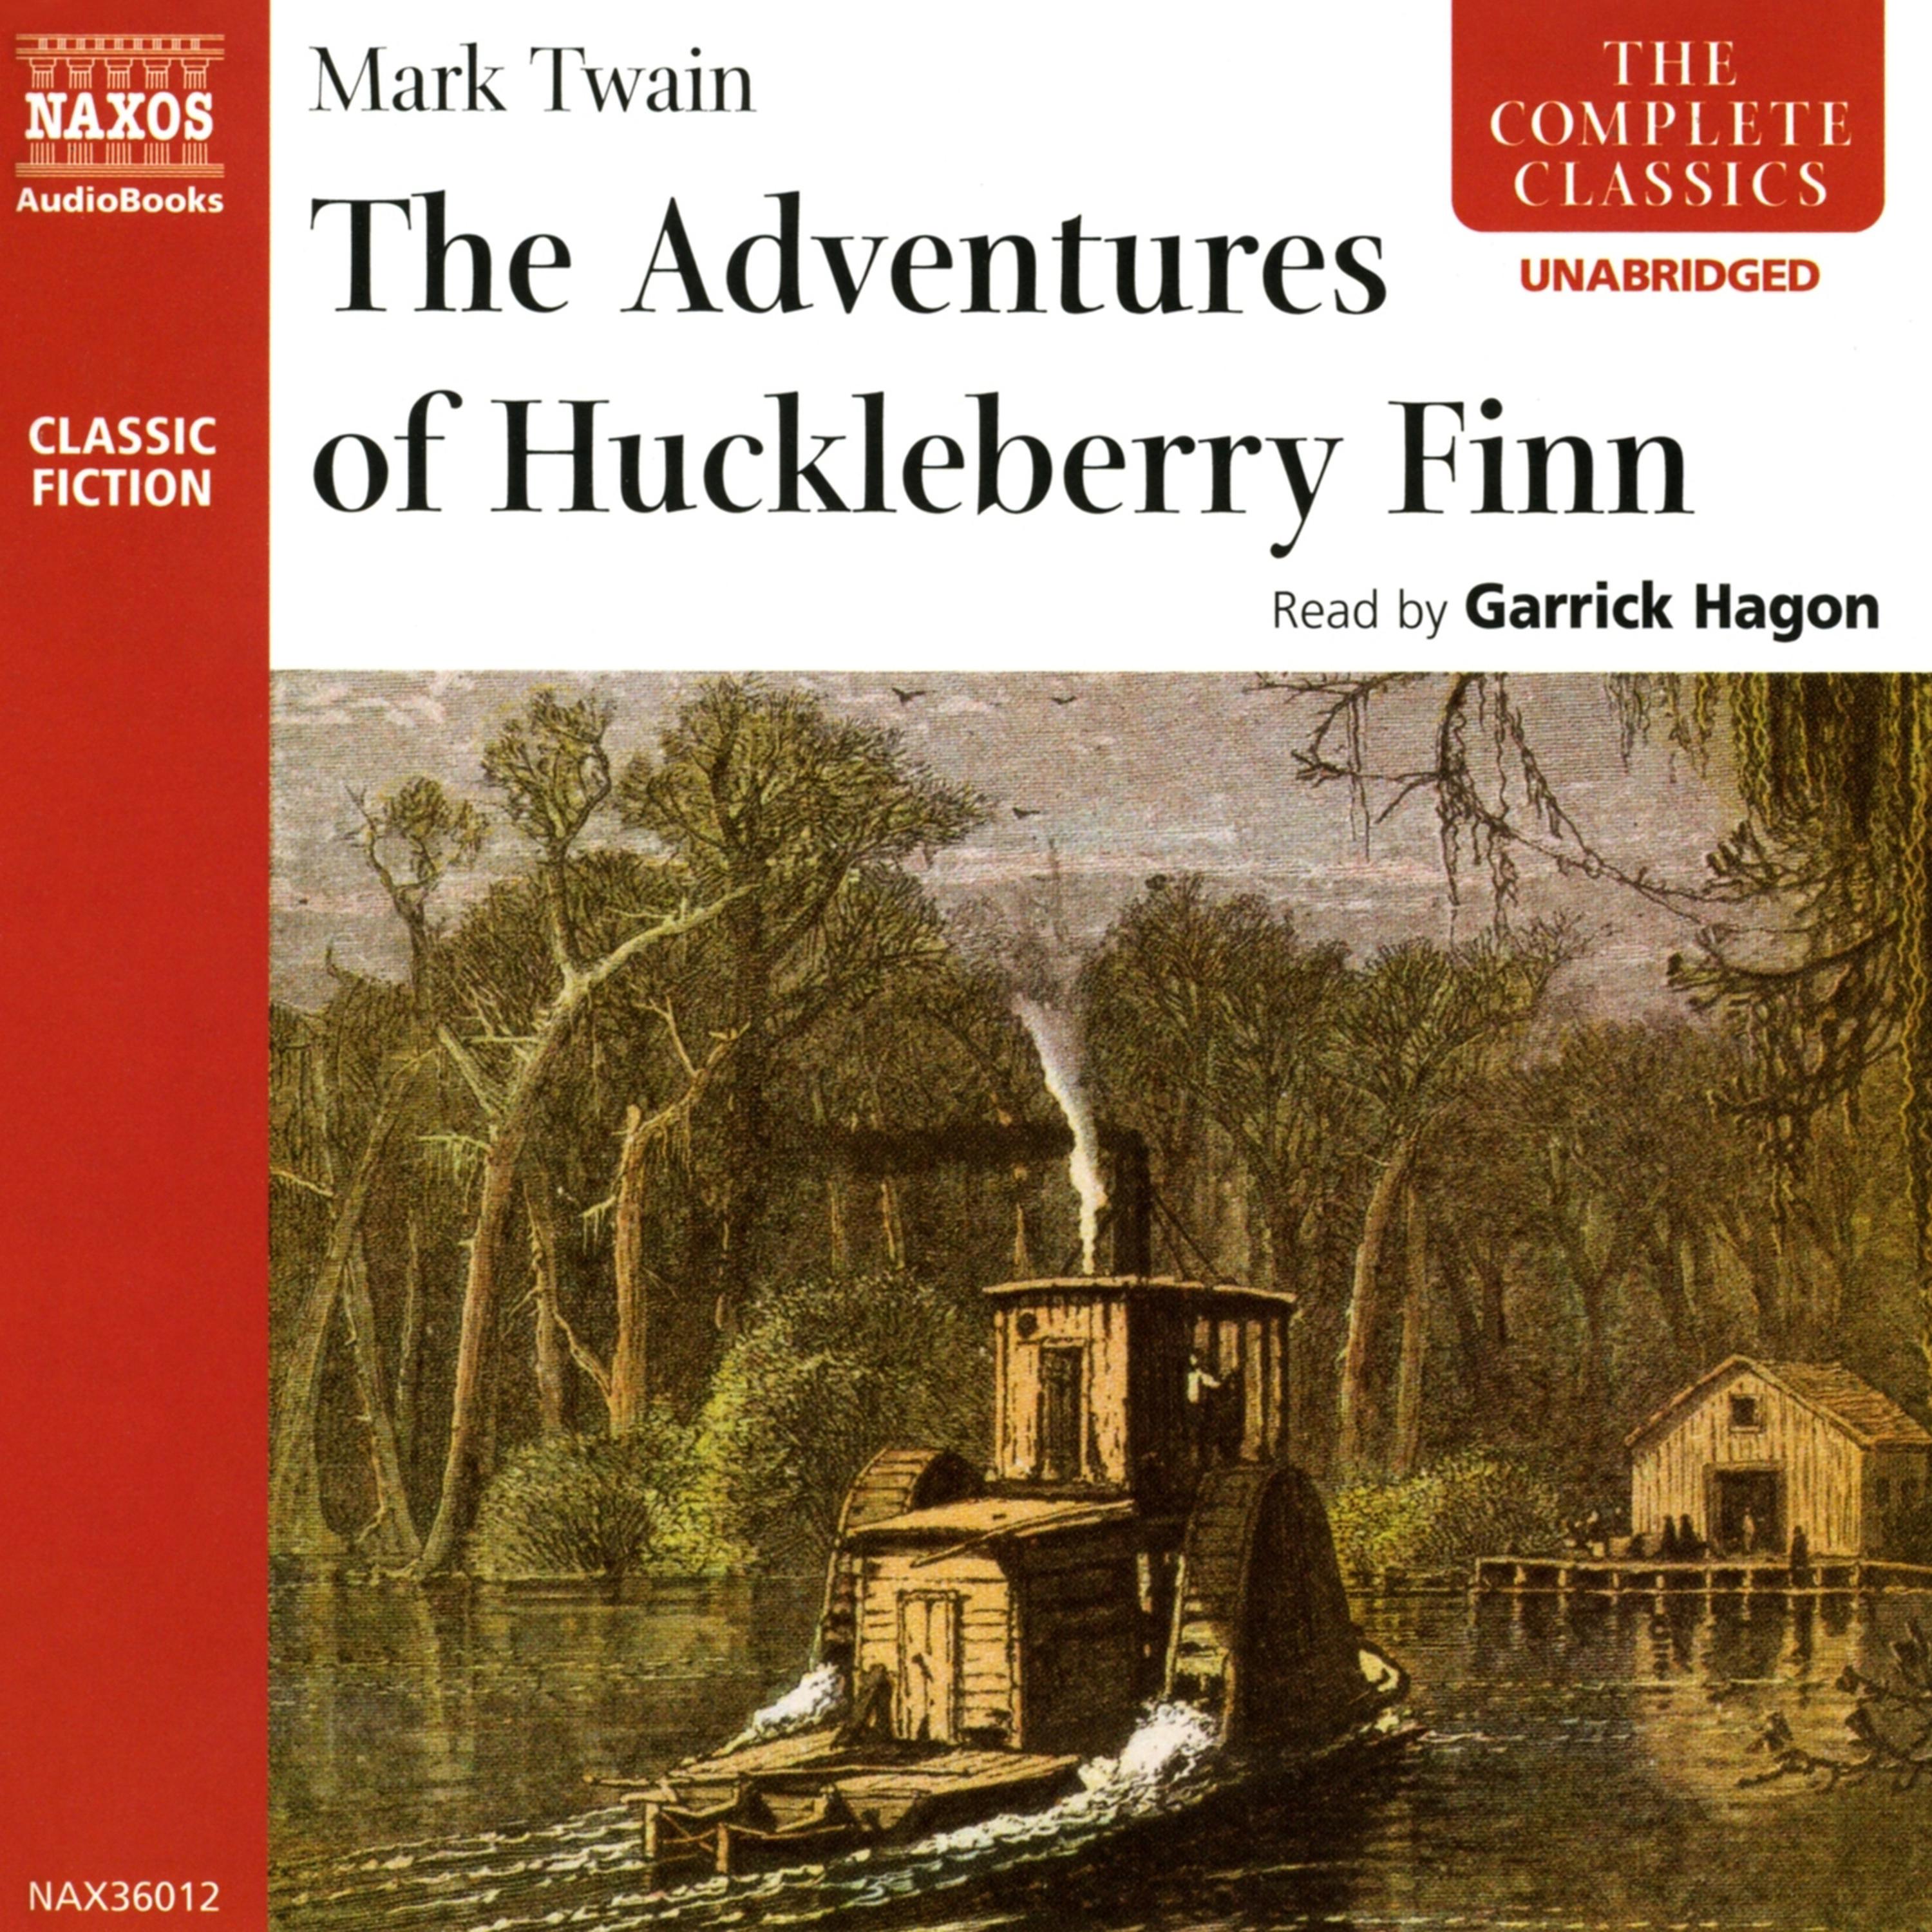 The adventures of huckleberry finn mark twain. Mark Twain the Adventures of Huckleberry Finn. Adventures of Huckleberry Finn. The Adventures of Huckleberry Finn by Mark Twain.